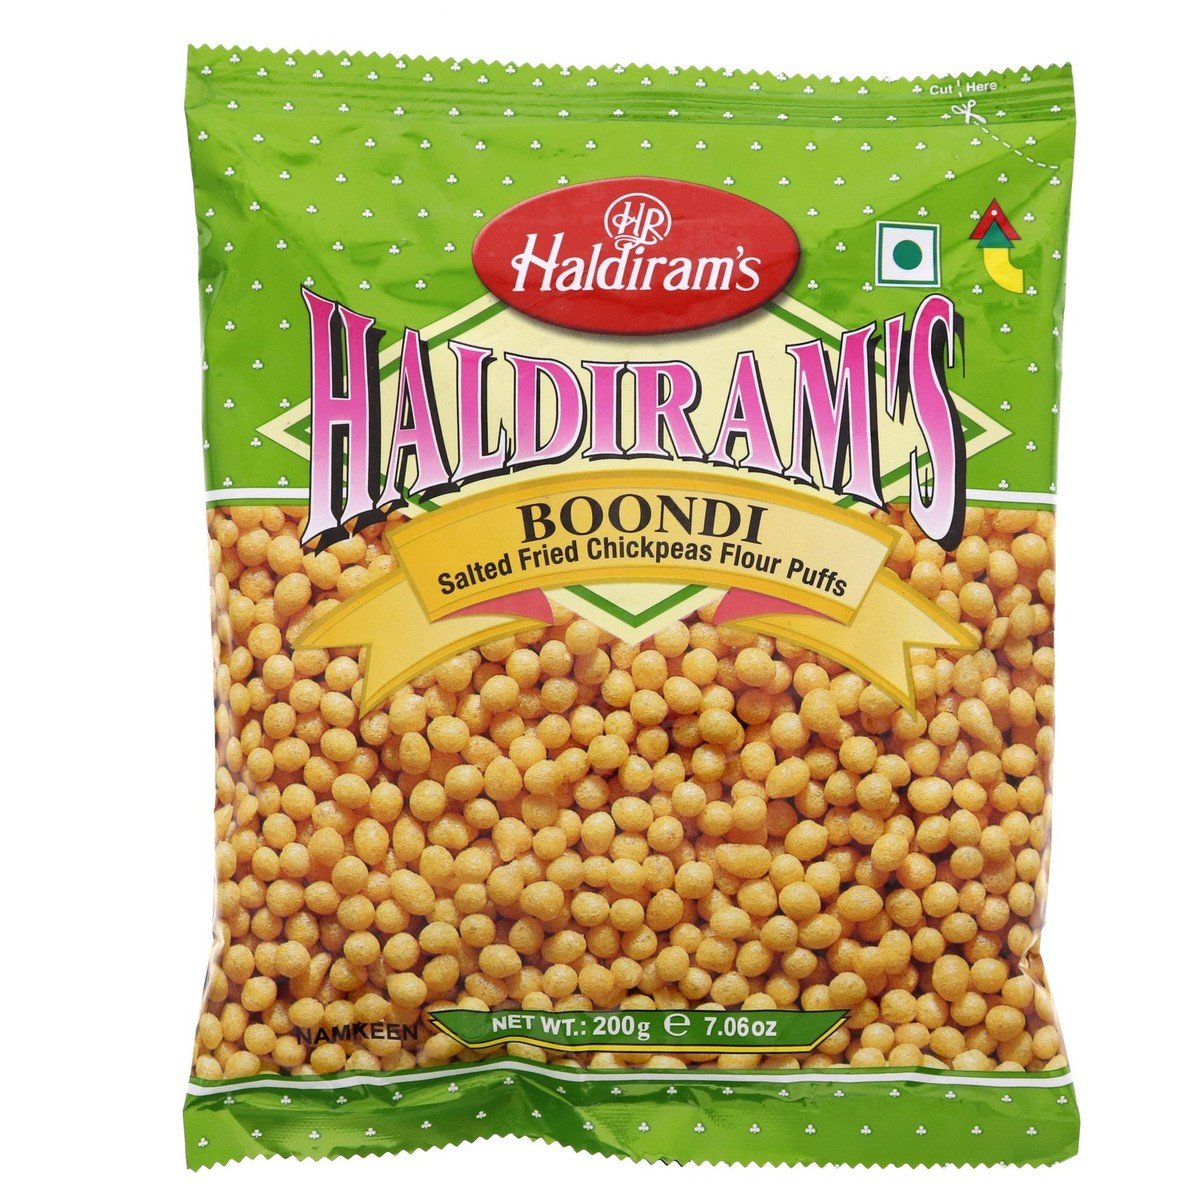 Haldiram's Boondi Salted Fried Chickpeas Flour Puffs 200g